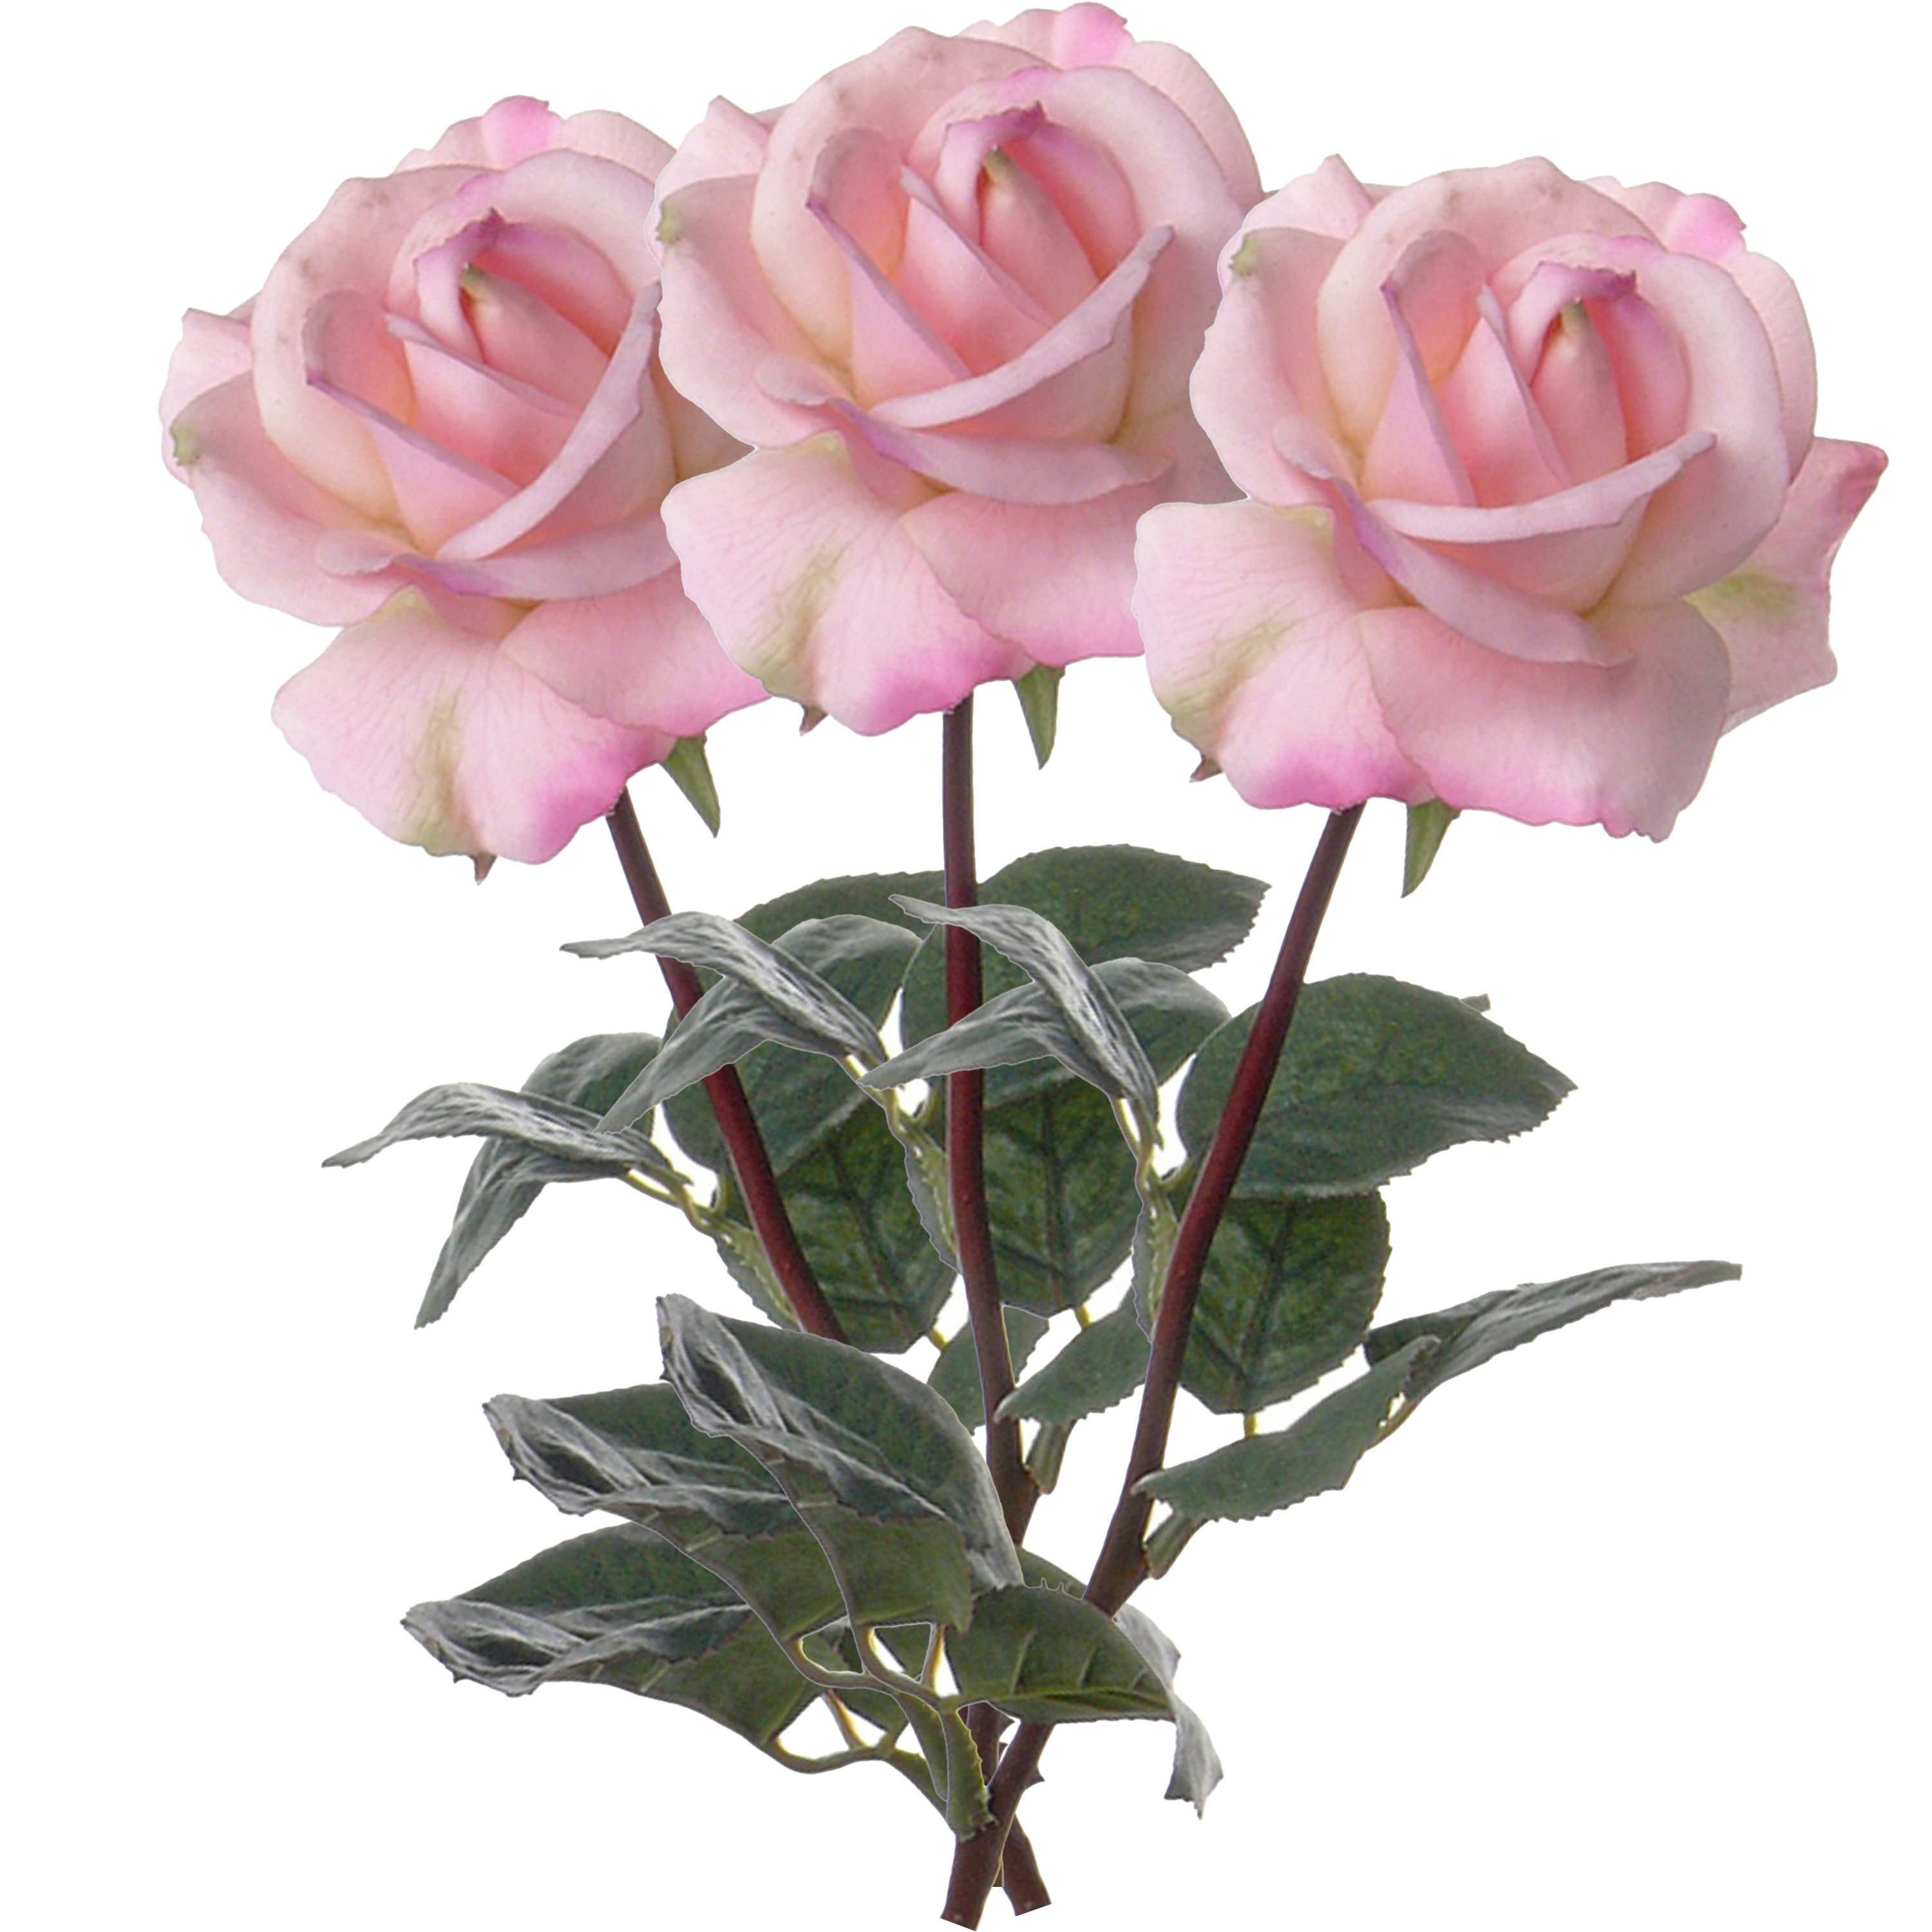 Afbeelding van Kunstbloem roos Caroline - 3x - roze - 70 cm - zijde - kunststof steel - decoratie bloemen